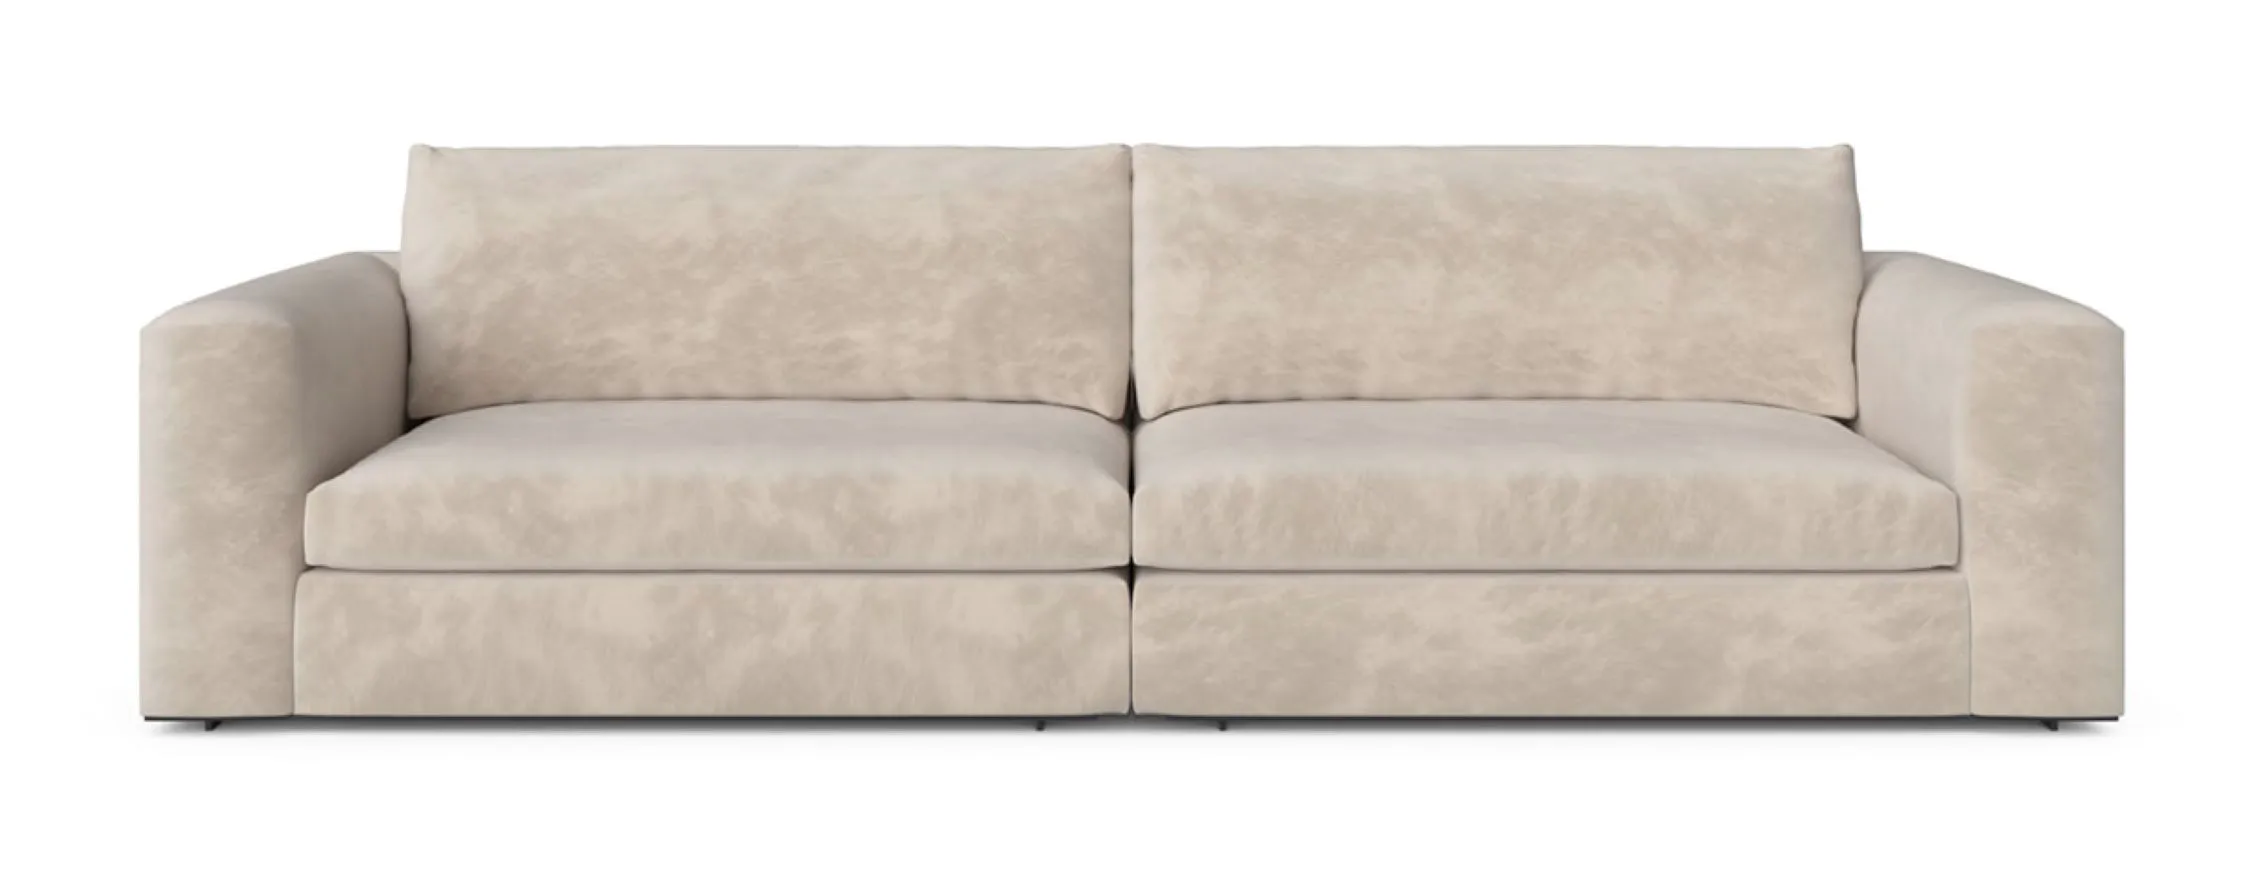 gallery-intro-Cosily Modular Sofa